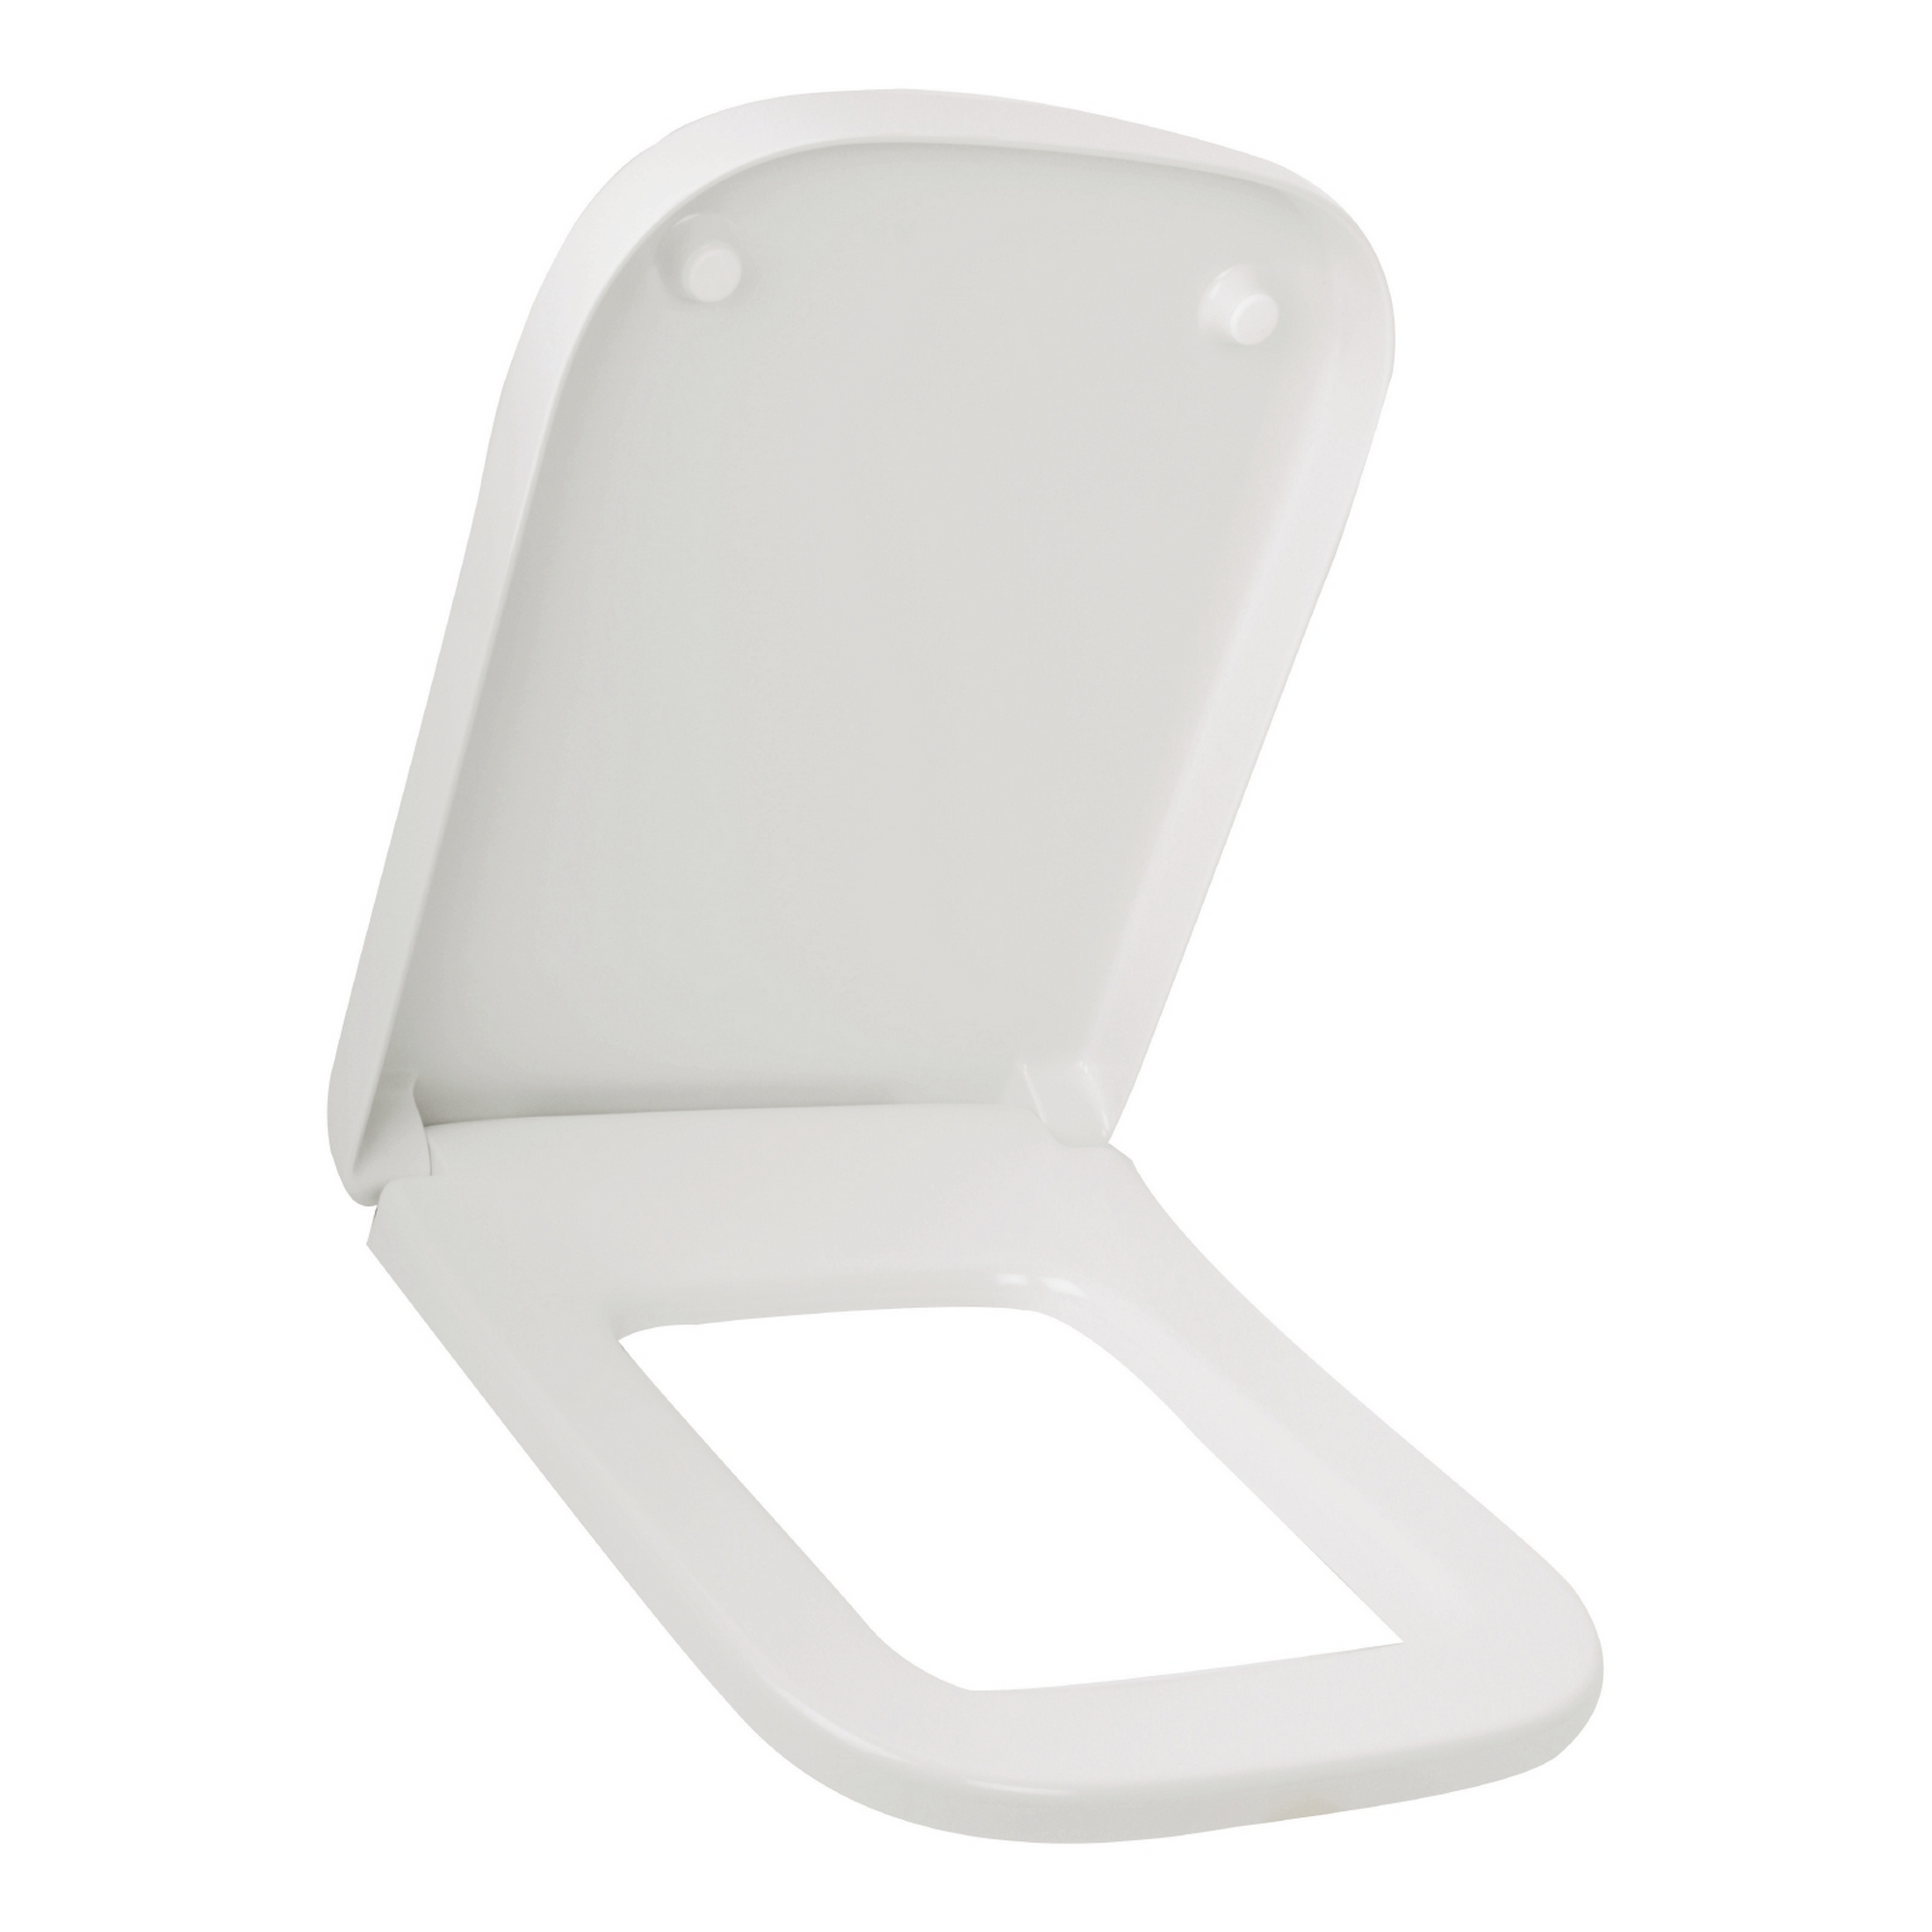 WC-Sitz 'Quadra' weiß eckig mit Absenkautomatik, passend zu Cubo, Quadra und Antheo + product picture